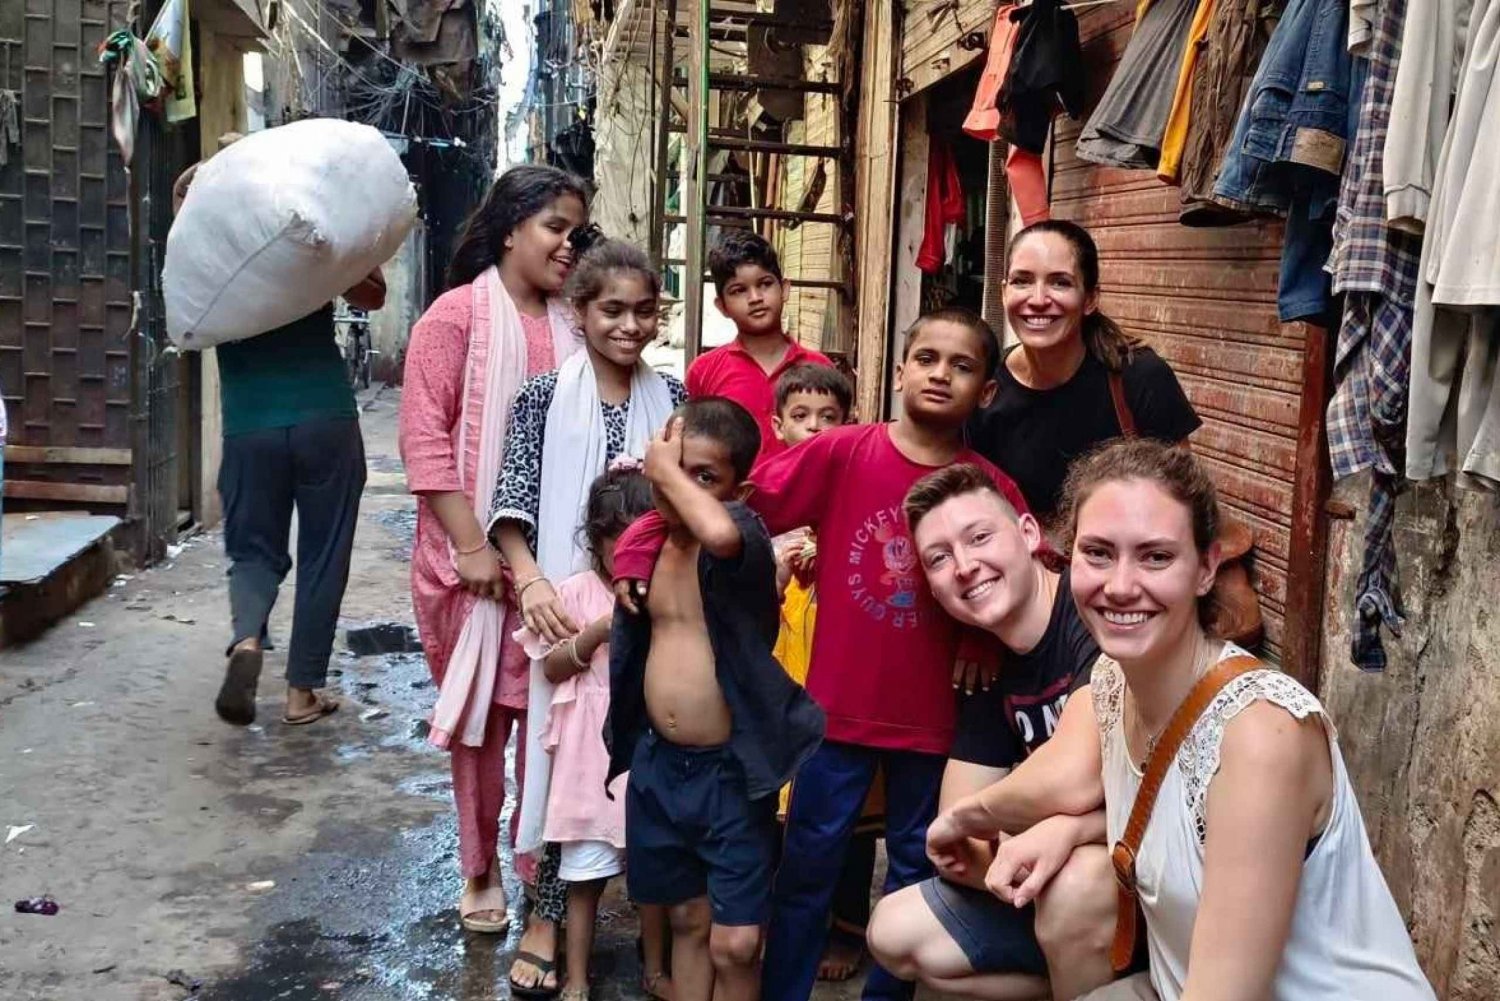 Dharavin Slumdog Millionire Tour - näe todellinen slummi paikallisen toimesta